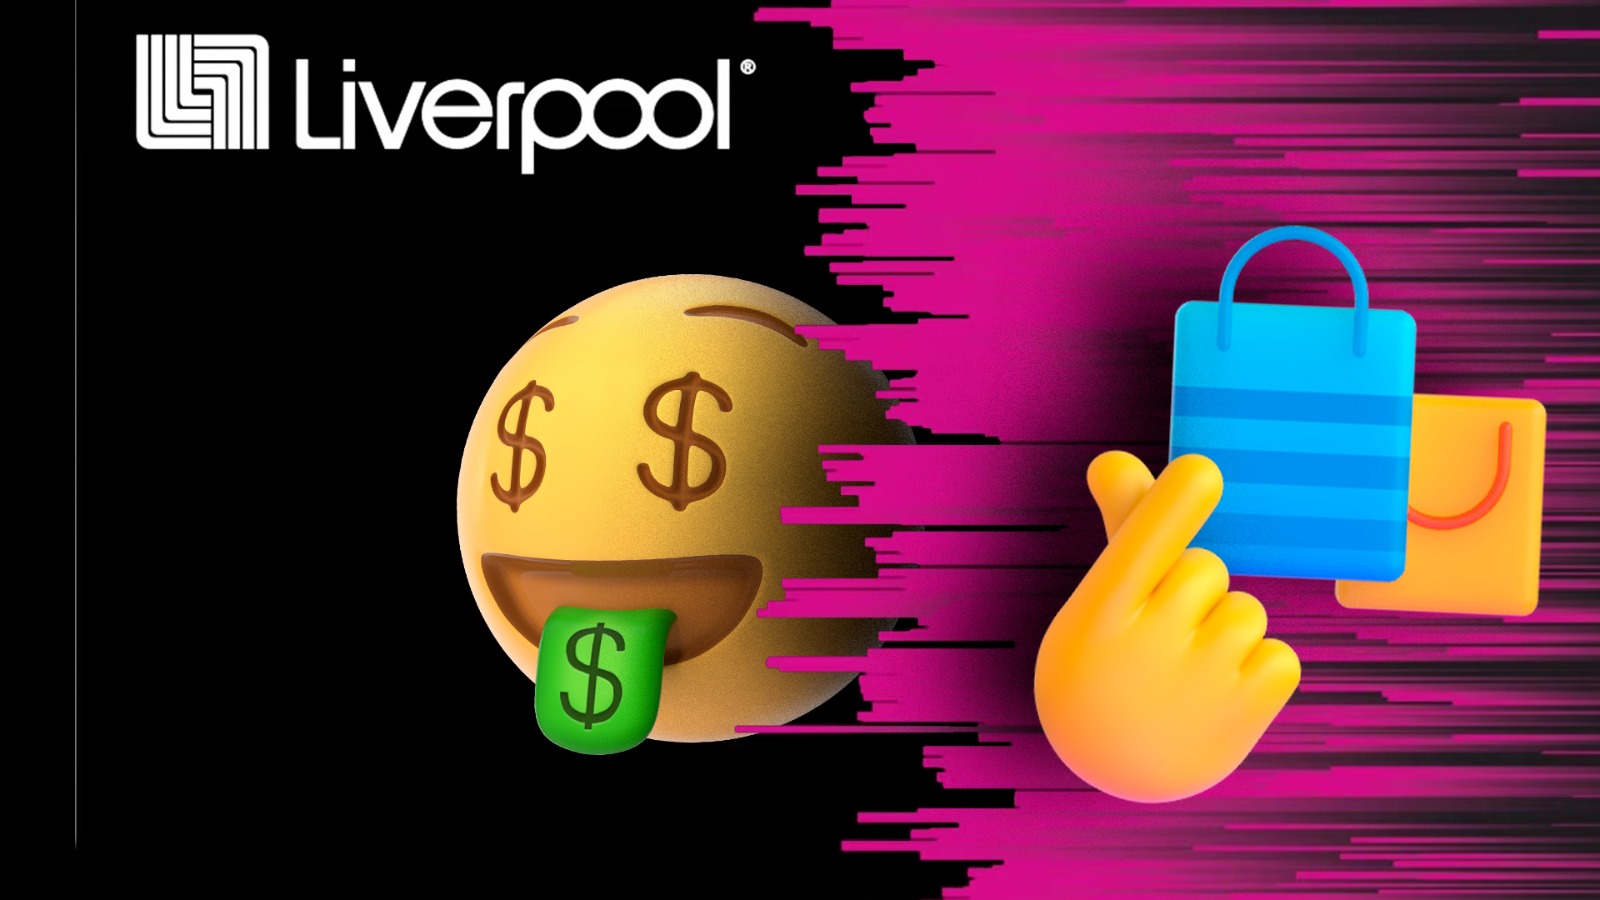 Liverpool VENDE iPhones a MITAD de precio por GRAN BARATA - Grupo Milenio